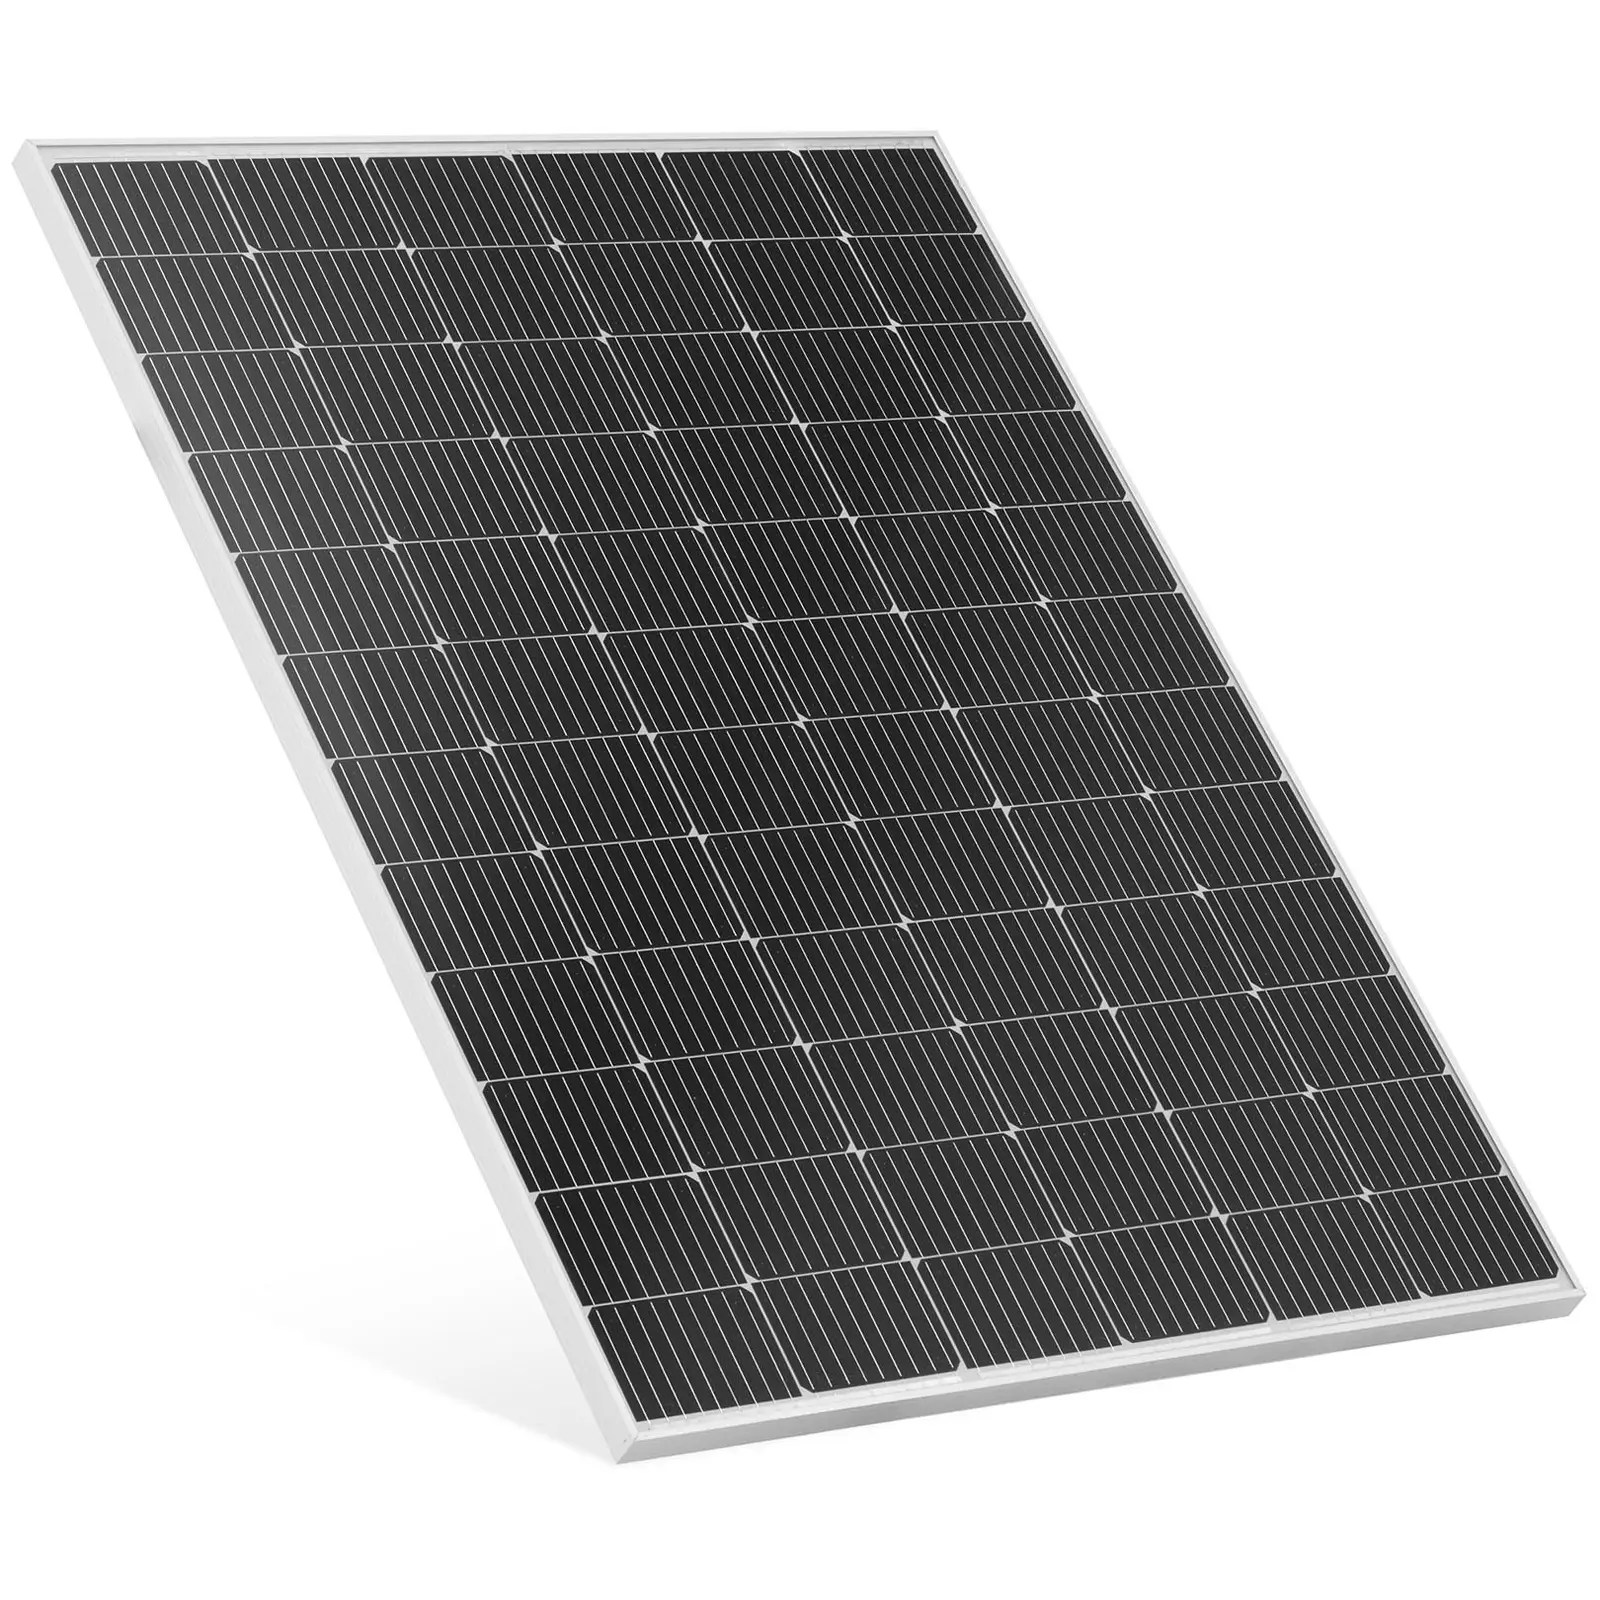 Painel solar monocristalino - 290 W - 48.38 V - com díodo de bypass